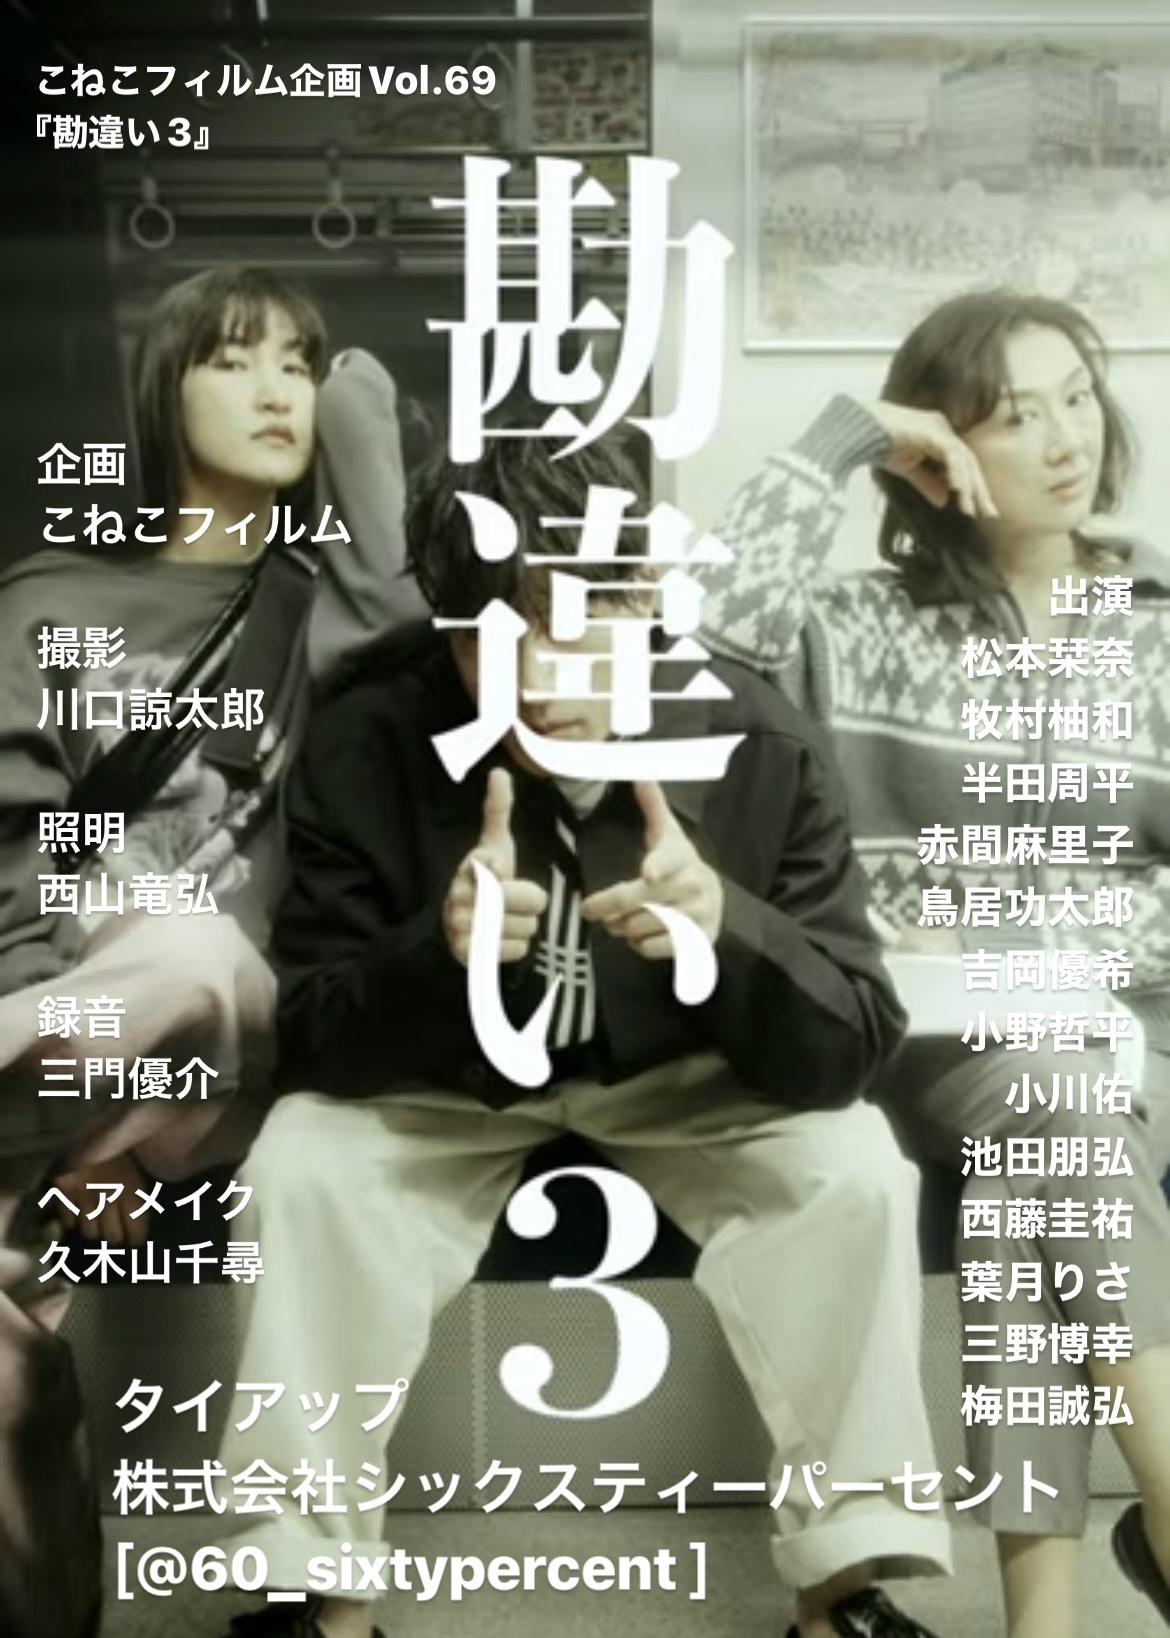 こねこフィルム企画Vol.69『勘違い3』に牧村柚和が出演しています